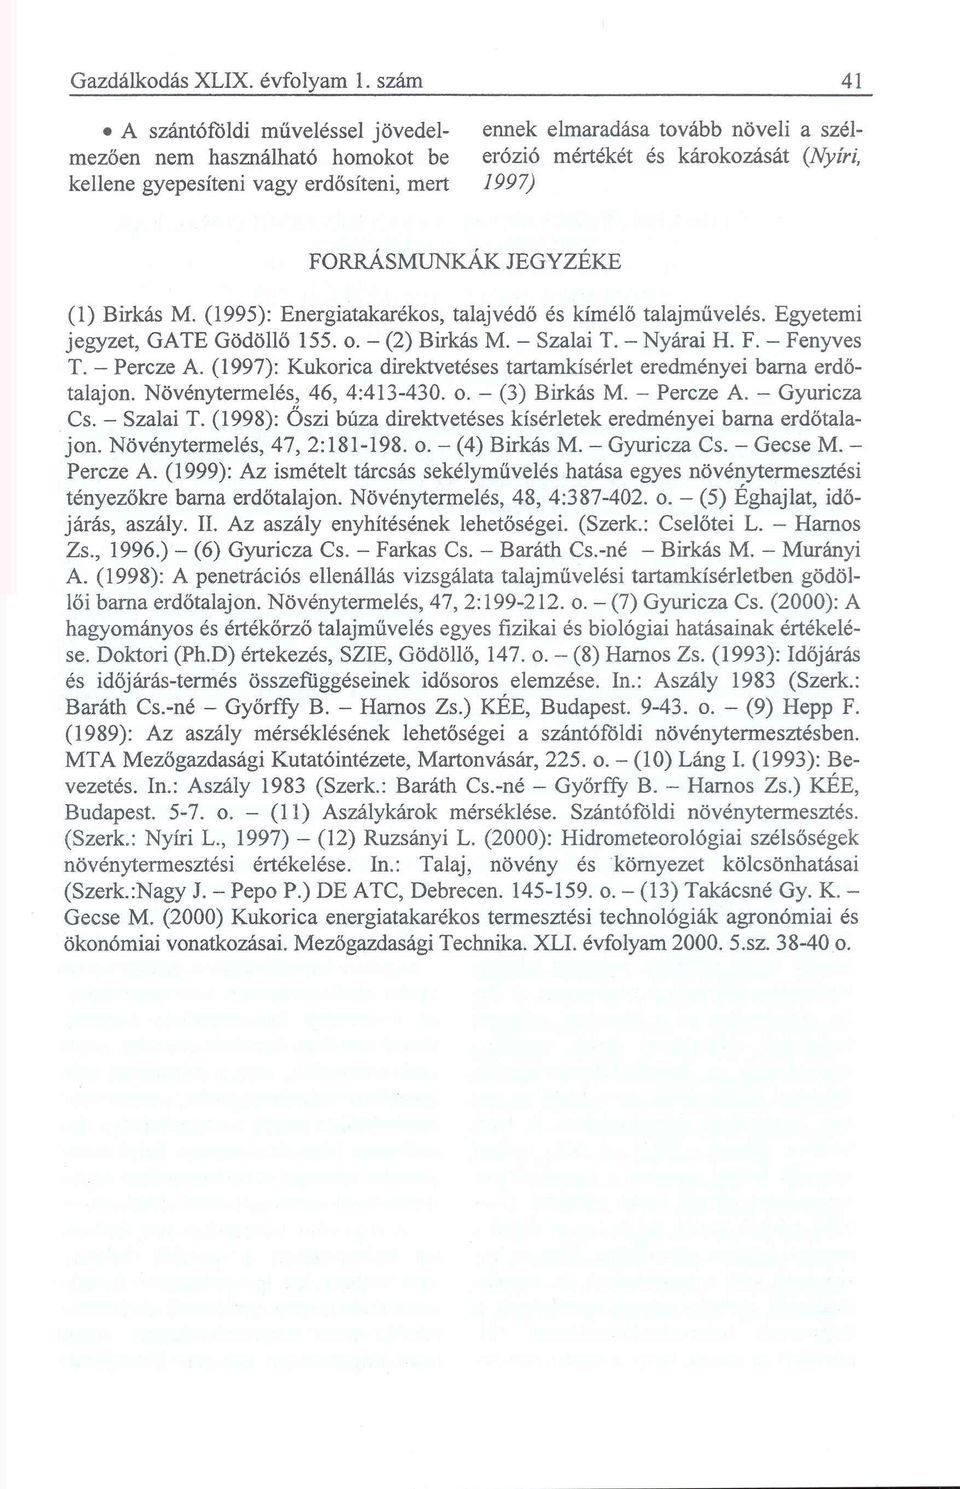 FORRÁSMUNKÁK JEGYZÉKE (1) Birkás M. (1995): Energiatakarékos, talajvédő és kímélő talajművelés. Egyetemi jegyzet, GATE Gödöllő 155. o. - (2) Birkás M. - Szalai T. - Nyárai H. F. - Fenyves T.